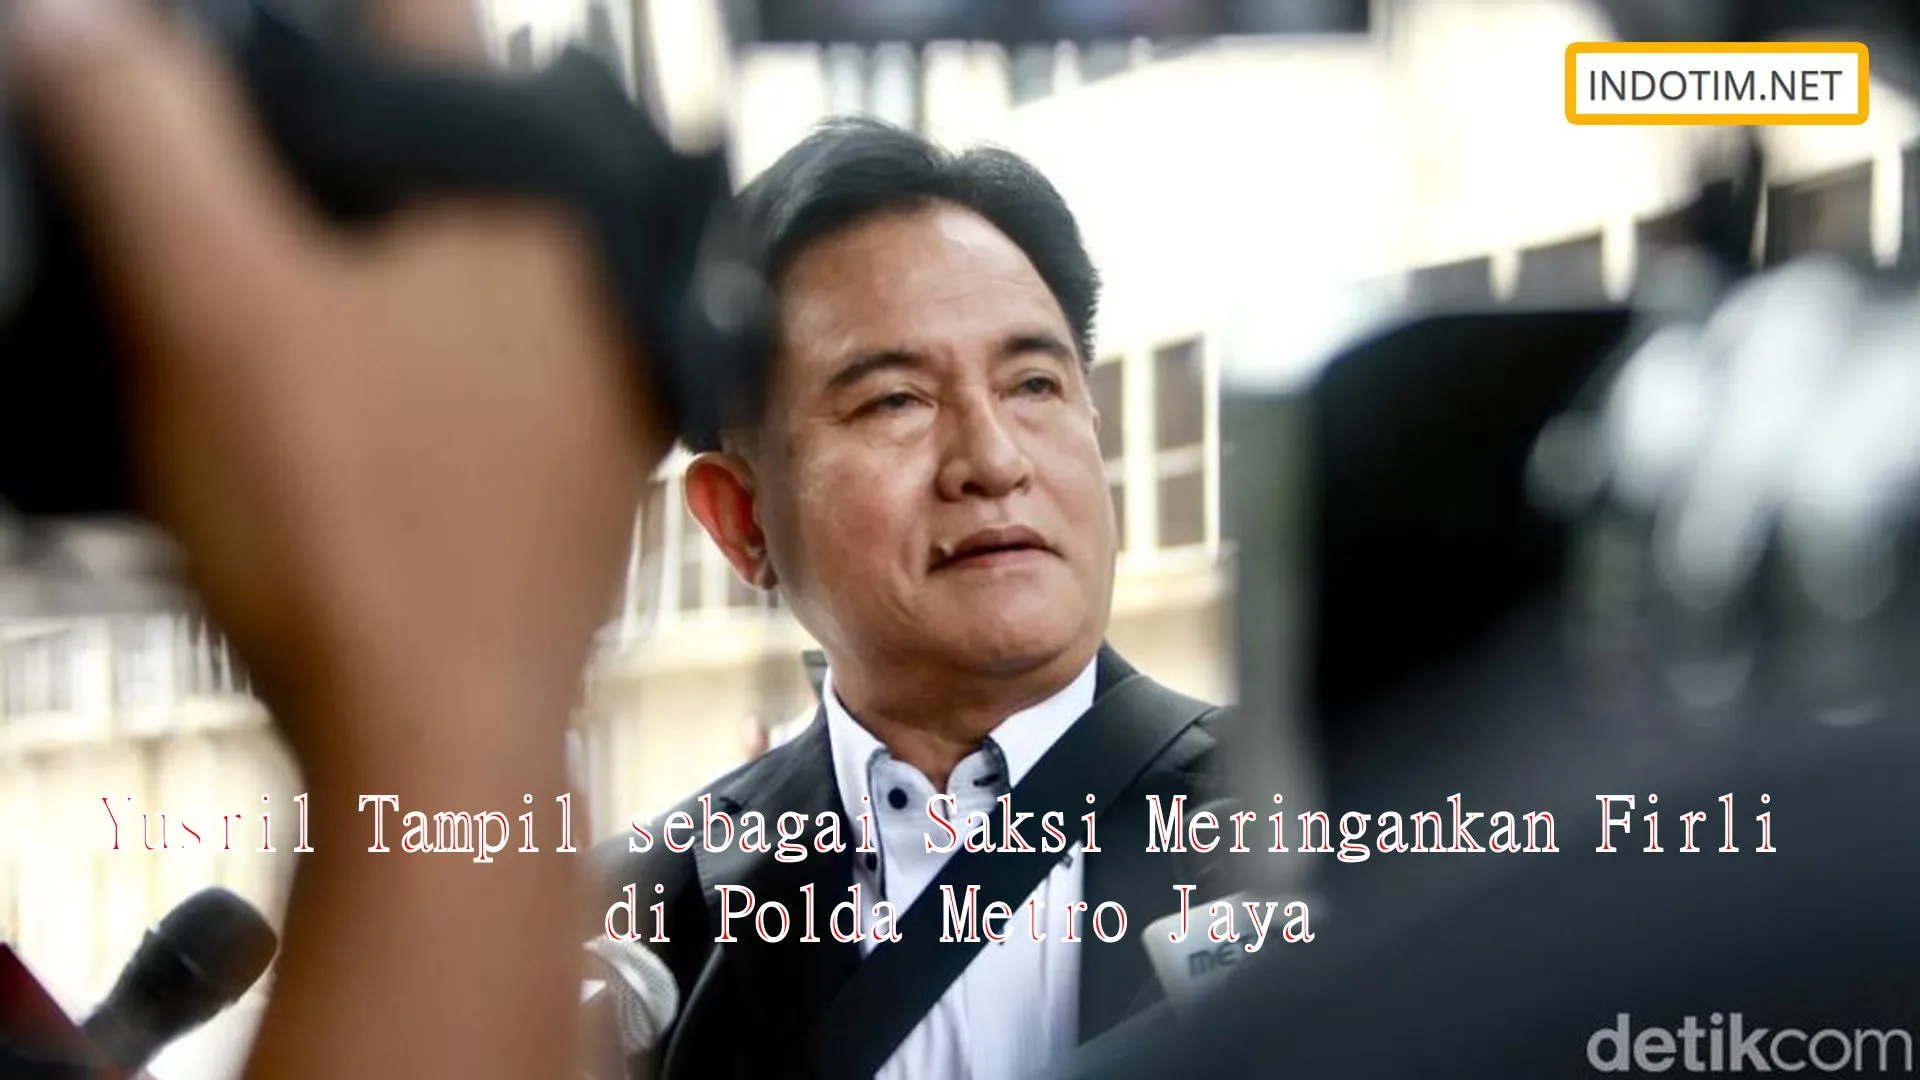 Yusril Tampil sebagai Saksi Meringankan Firli di Polda Metro Jaya